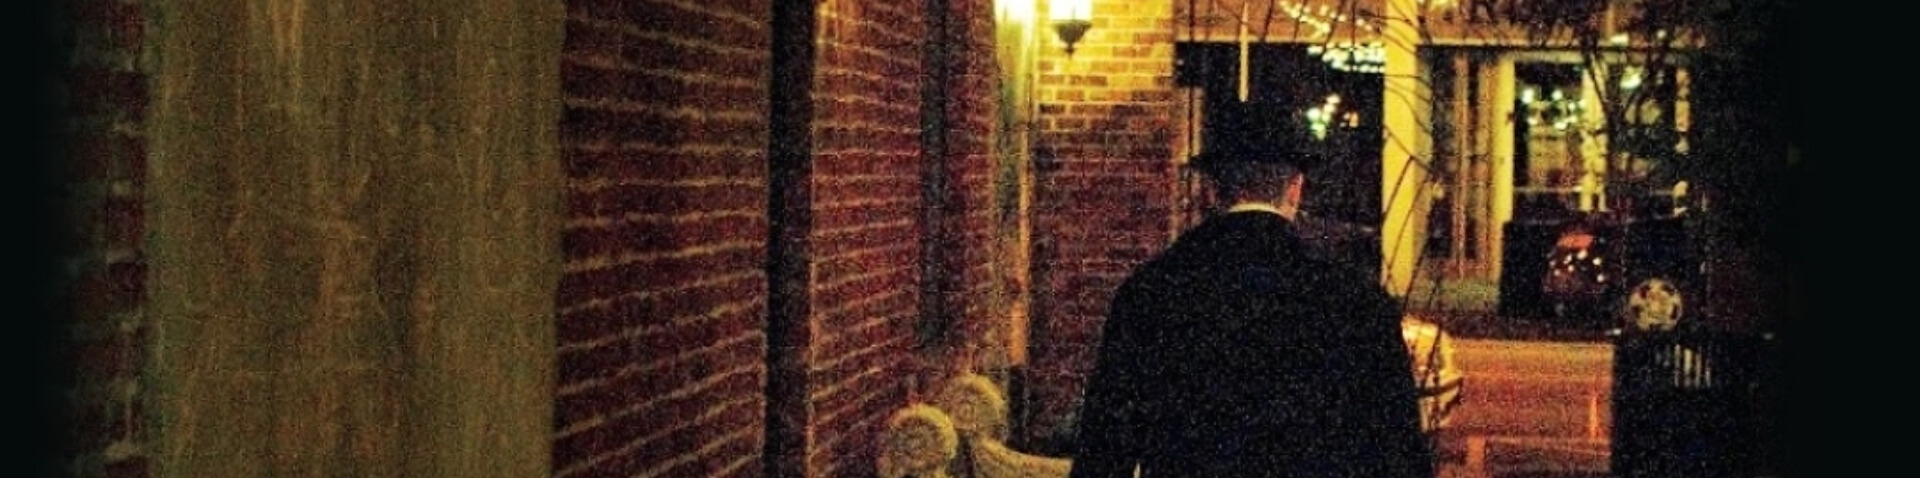 man walking down a dark alleyway